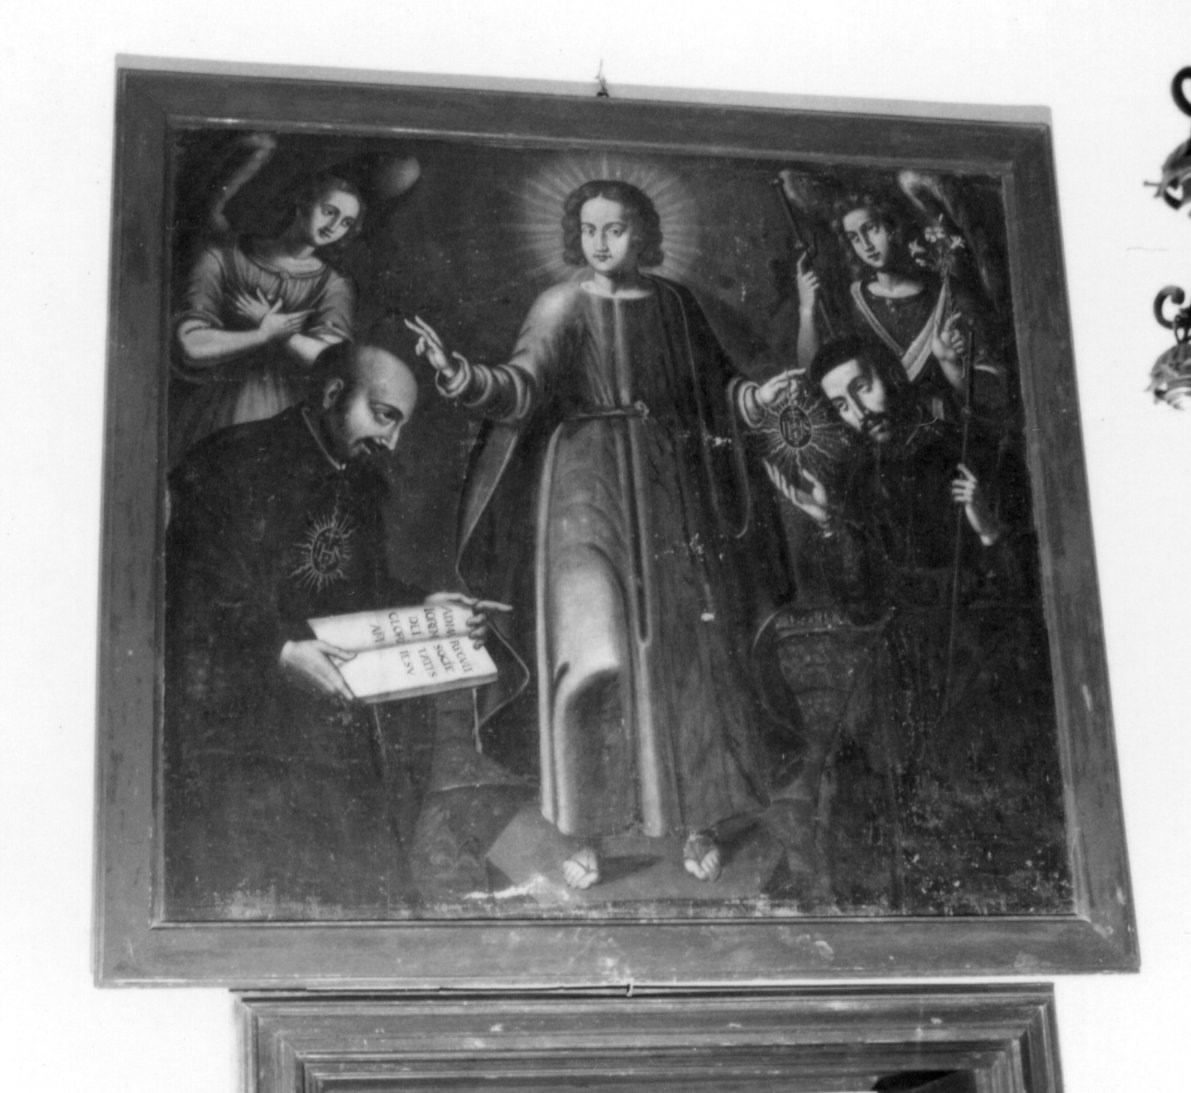 Gesù fanciullo tra sant'ignazio di loyola e san francesco saverio (dipinto)